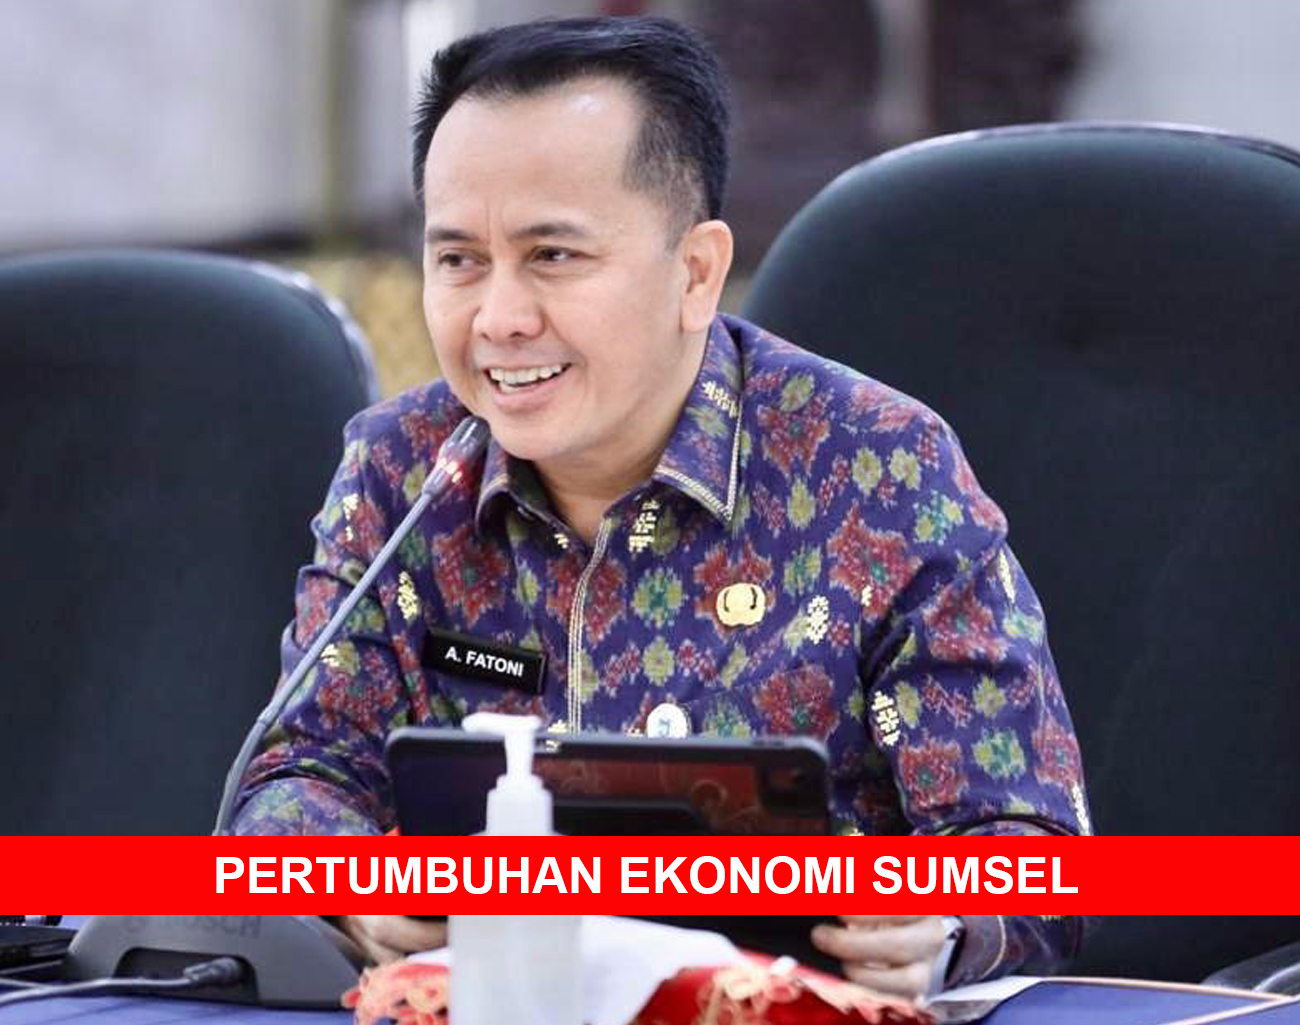 Data Terbaru BPS: Pertumbuhan Ekonomi Sumsel 5,08% Lampaui Nasional, Tertinggi Kedua di Sumatera